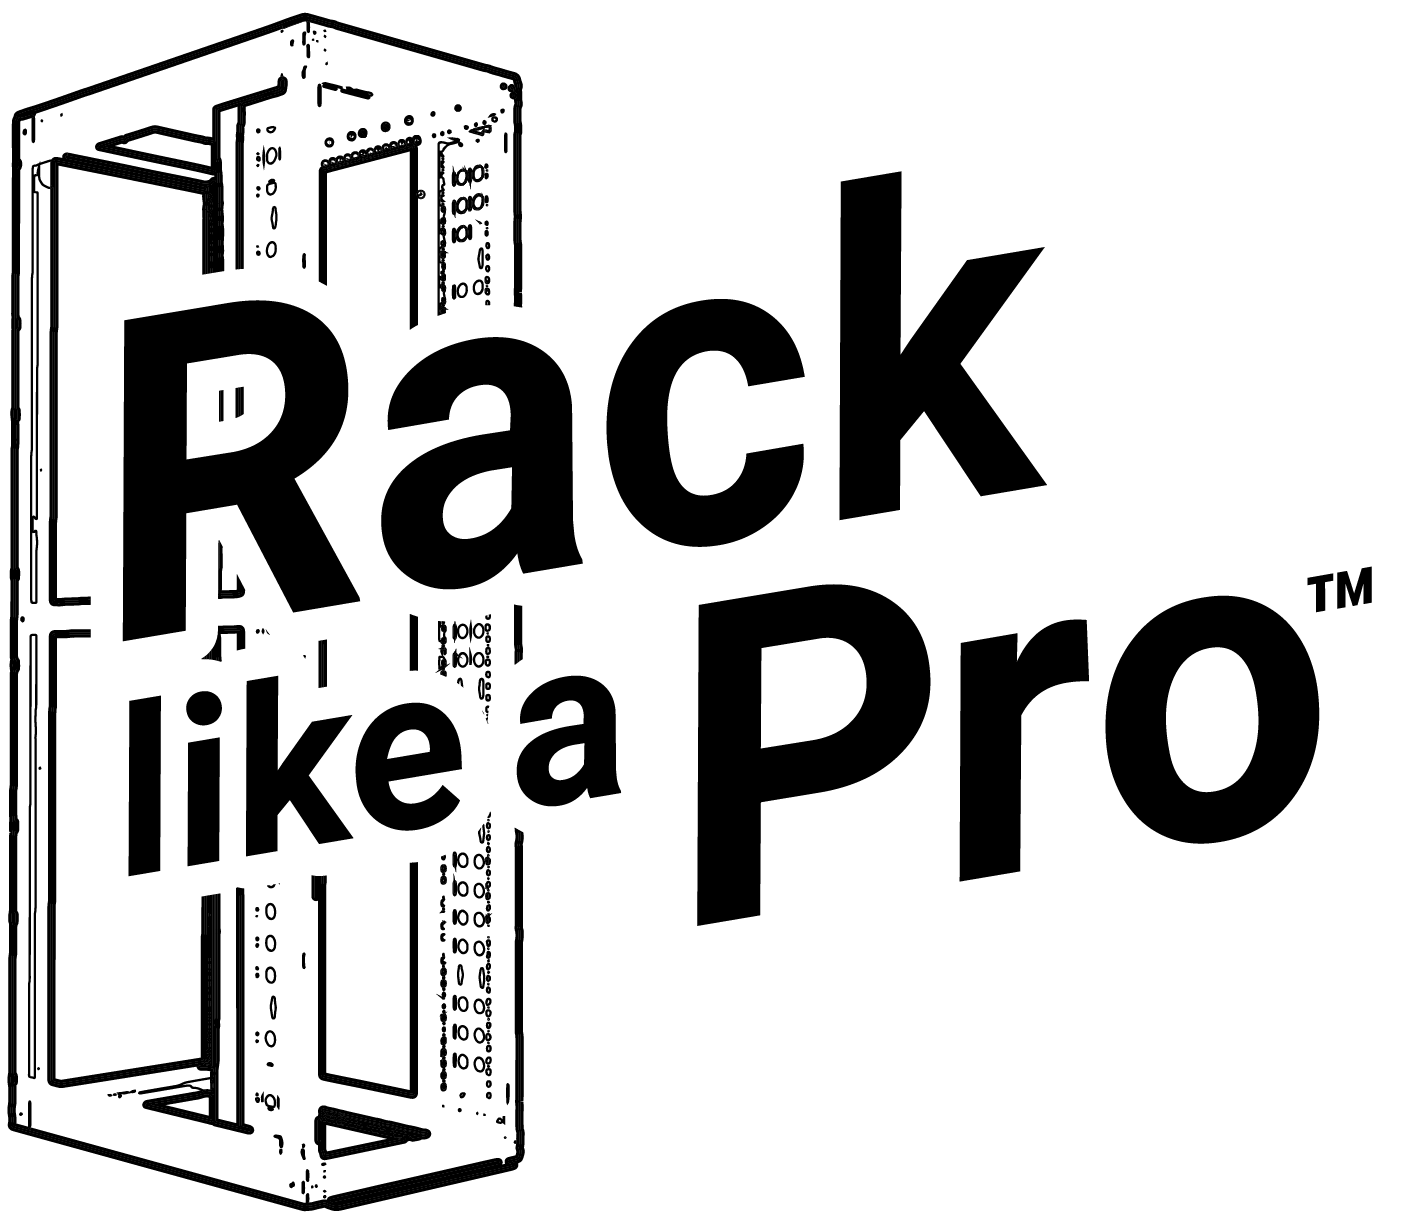 Rack Logo - Rack Like a Pro │ServerLIFT